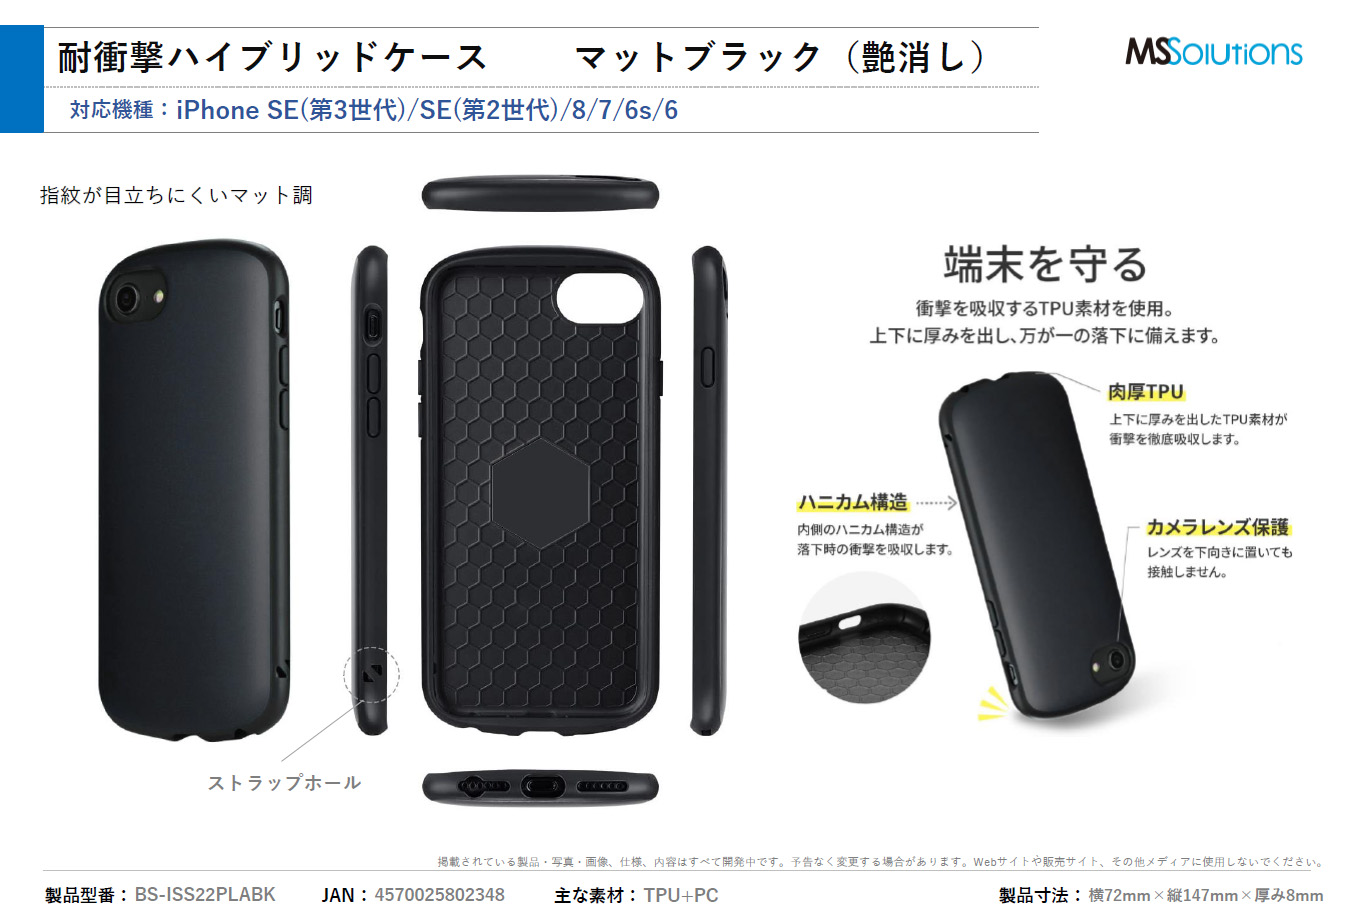 iPhone SE (第3世代)/SE (第2世代)/8/7/6s/6 超軽量・極薄・耐衝撃ハイブリッドケース ブラック